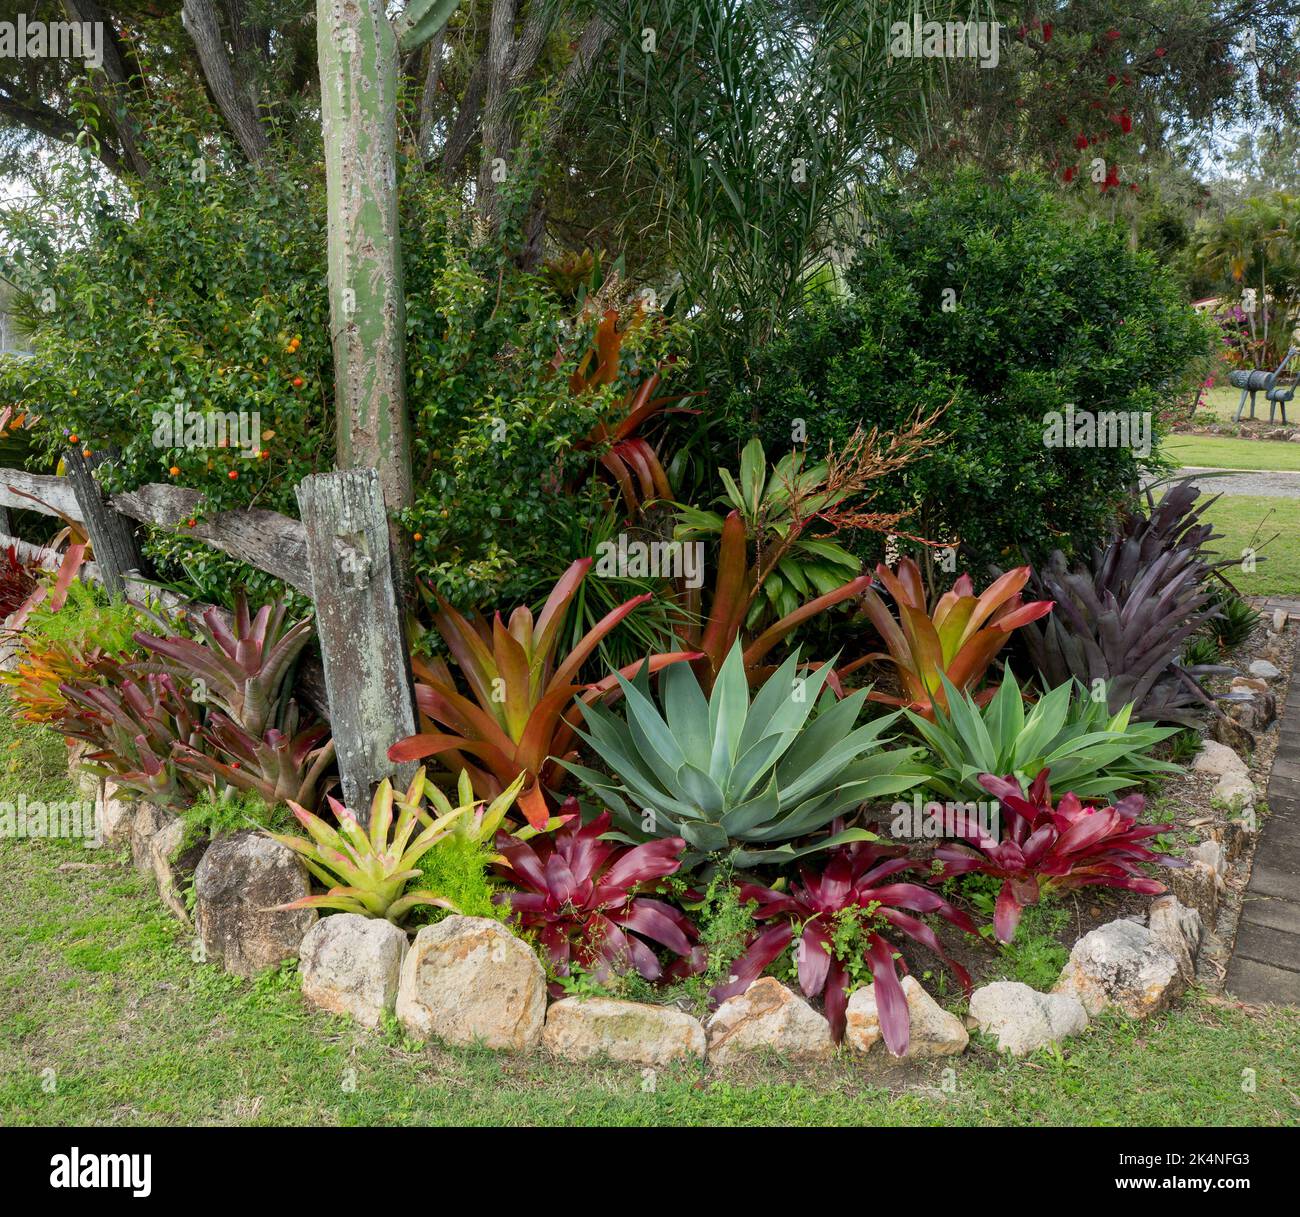 Letto da giardino con piante tolleranti alla siccità, succulenti e bromeliadi con fogliame colorato rosso e verde, bordato di rocce, in Australia Foto Stock